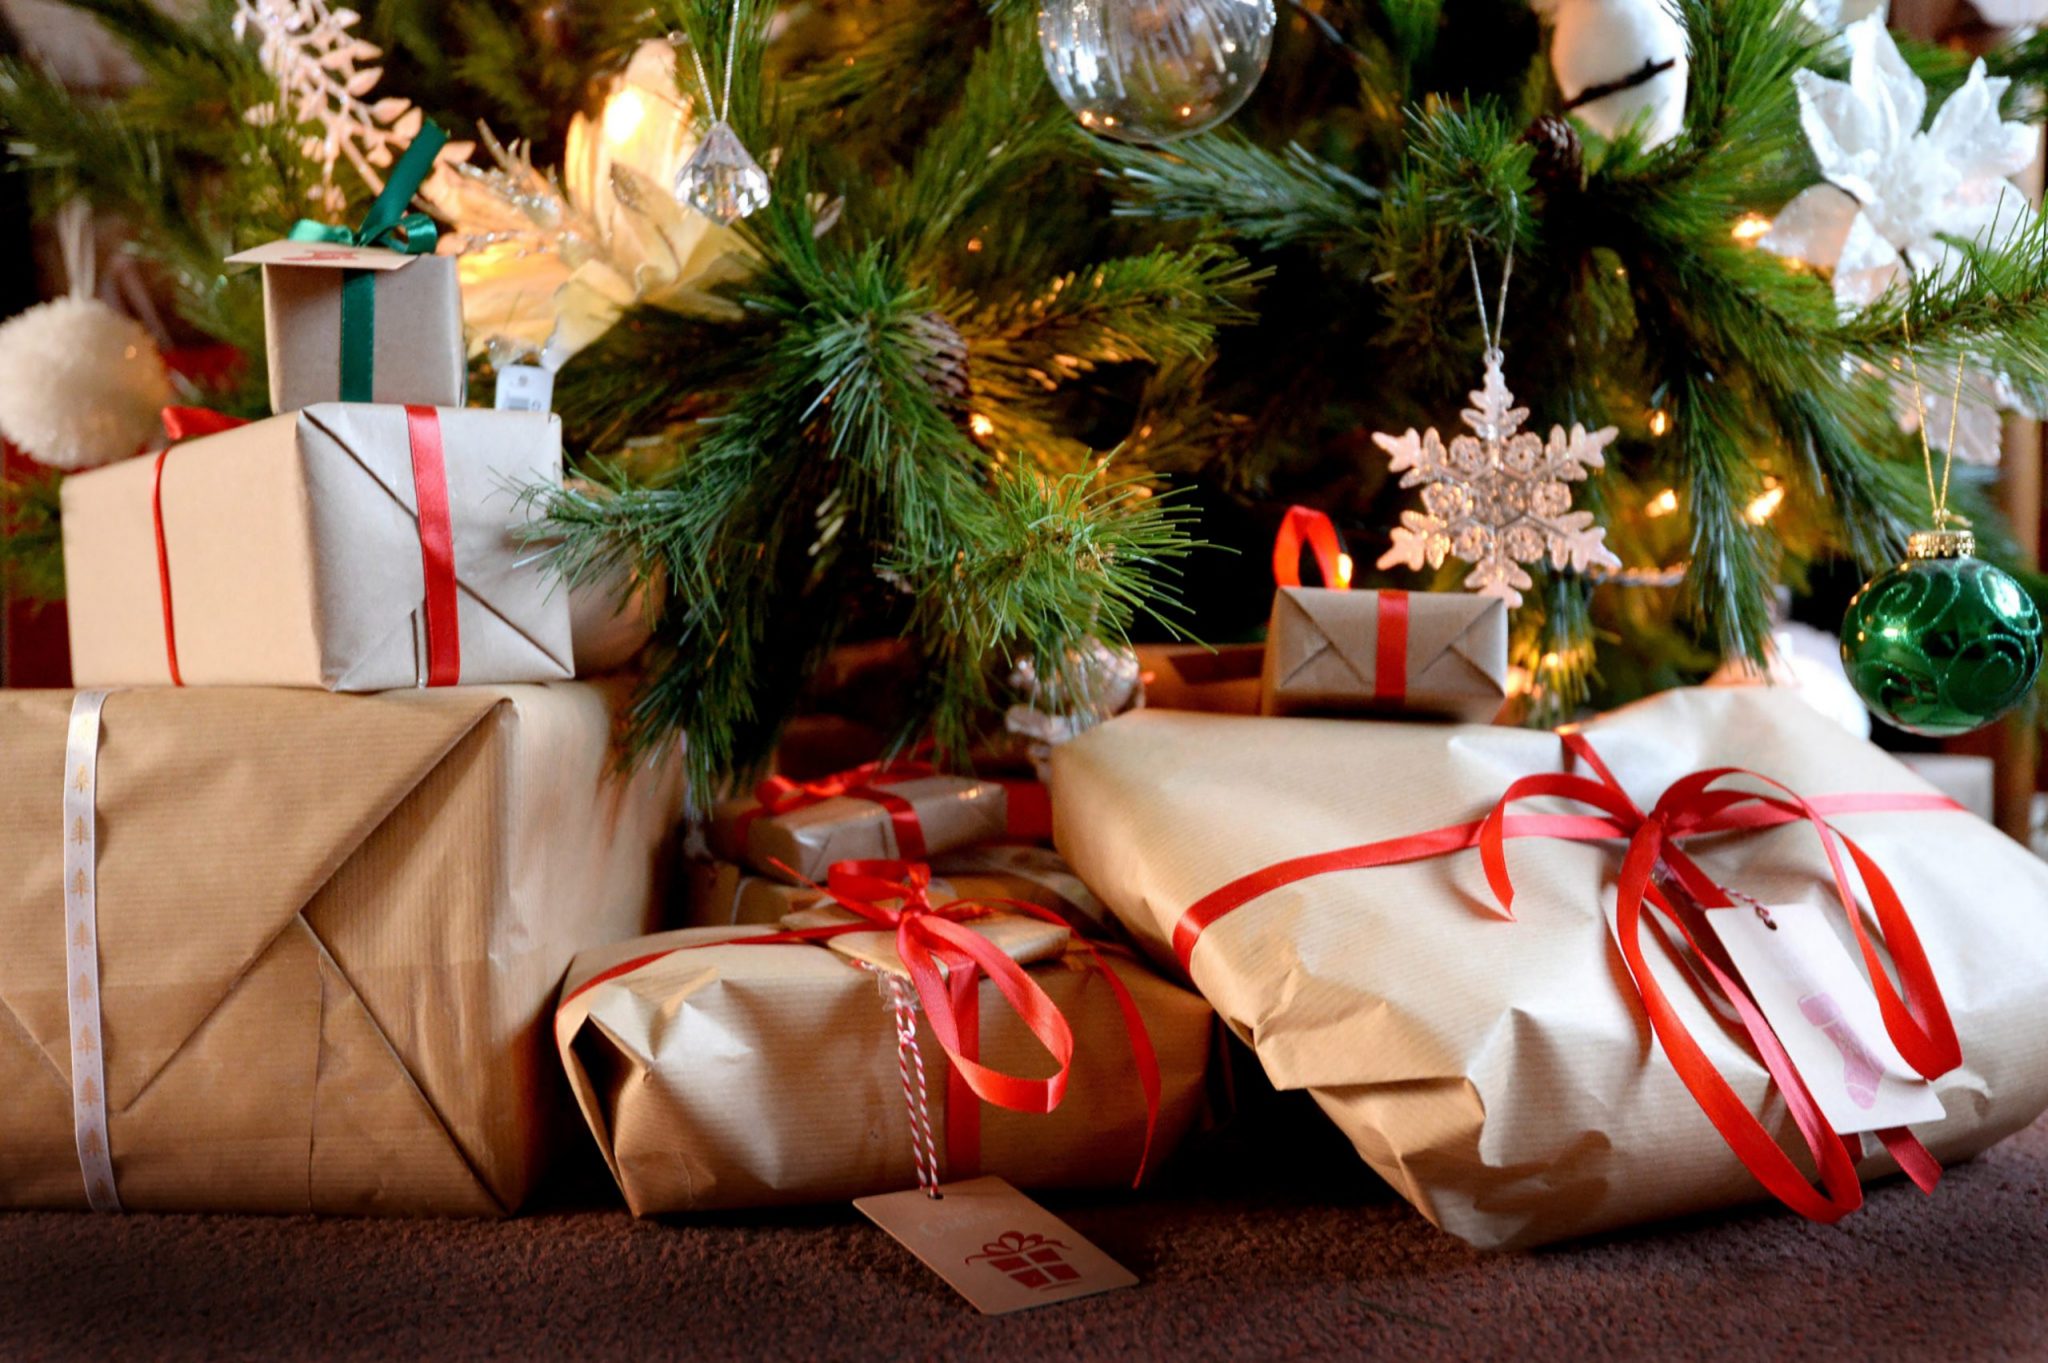 24 Piezas Cajas de Dulces Navideños,Cajas de Dulces Navideños con cinta Cajas de Dulces Navideñas Cajas de papel navideñas Cajas de dulces de chocolate con 2 rollos de cinta para la fiesta de Navidad 